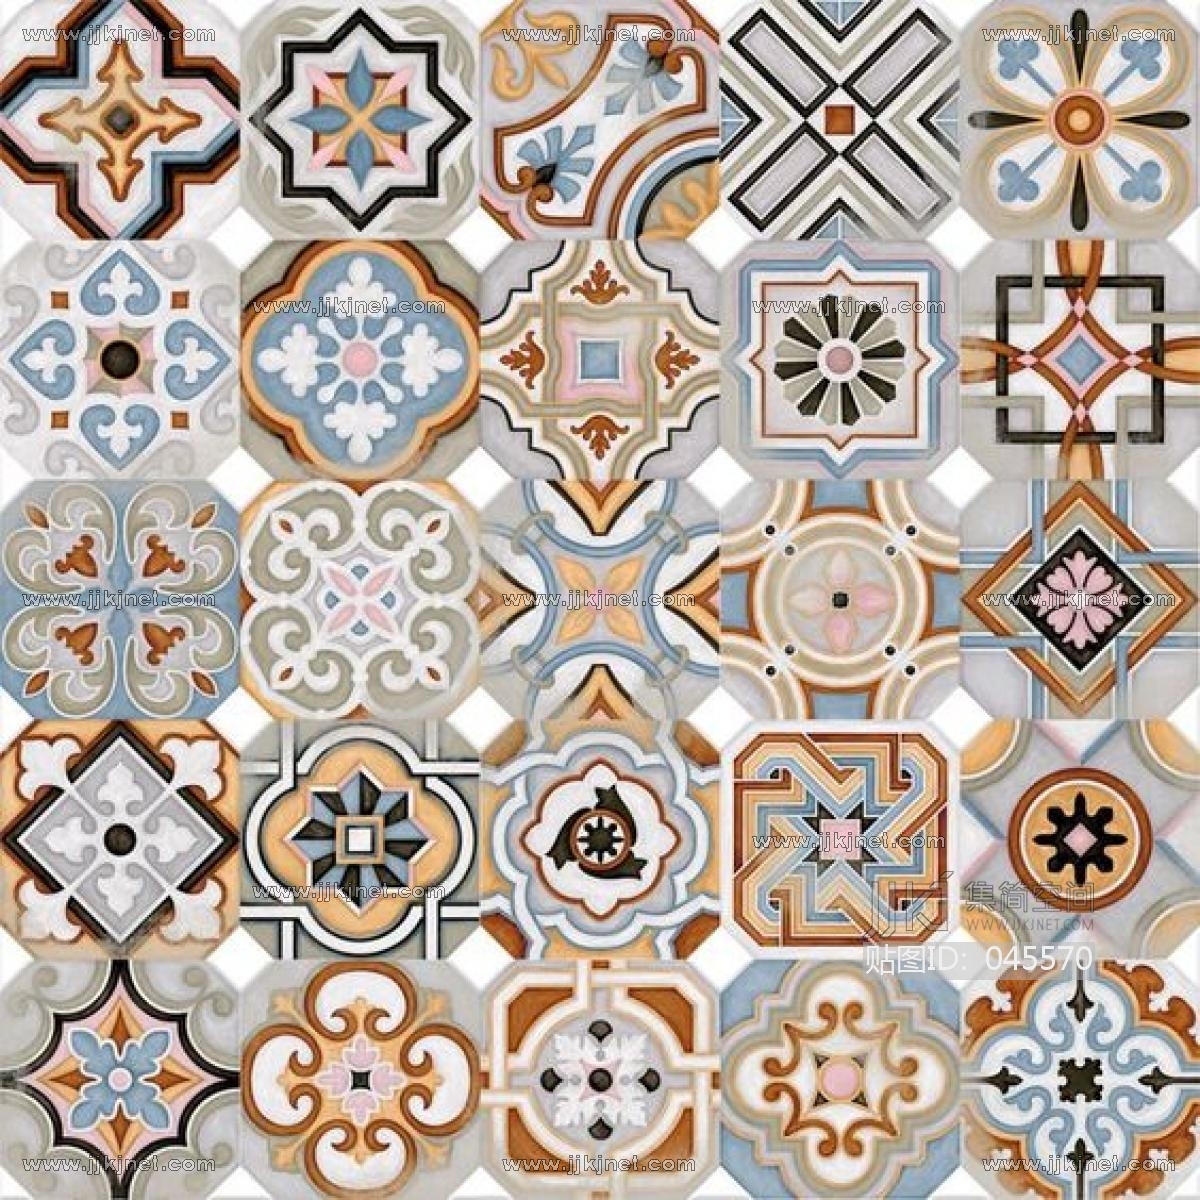 欧式地中海民族花纹瓷砖花砖贴图 (19)材质贴图下载-【集简空间】「每日更新」